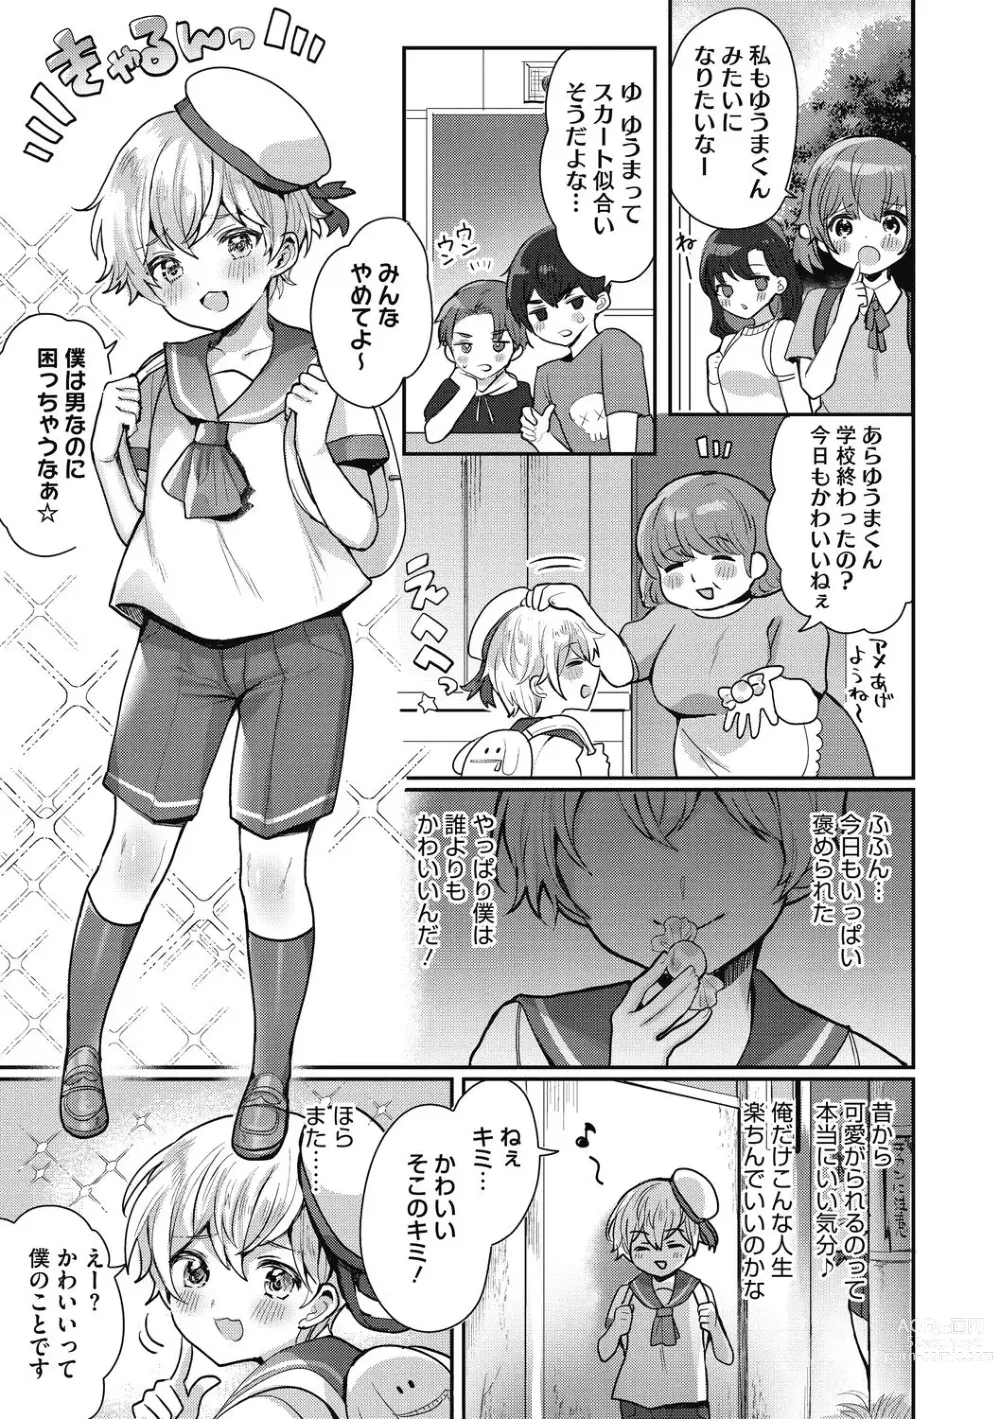 Page 3 of manga OneShota Nama Haishinchuu!